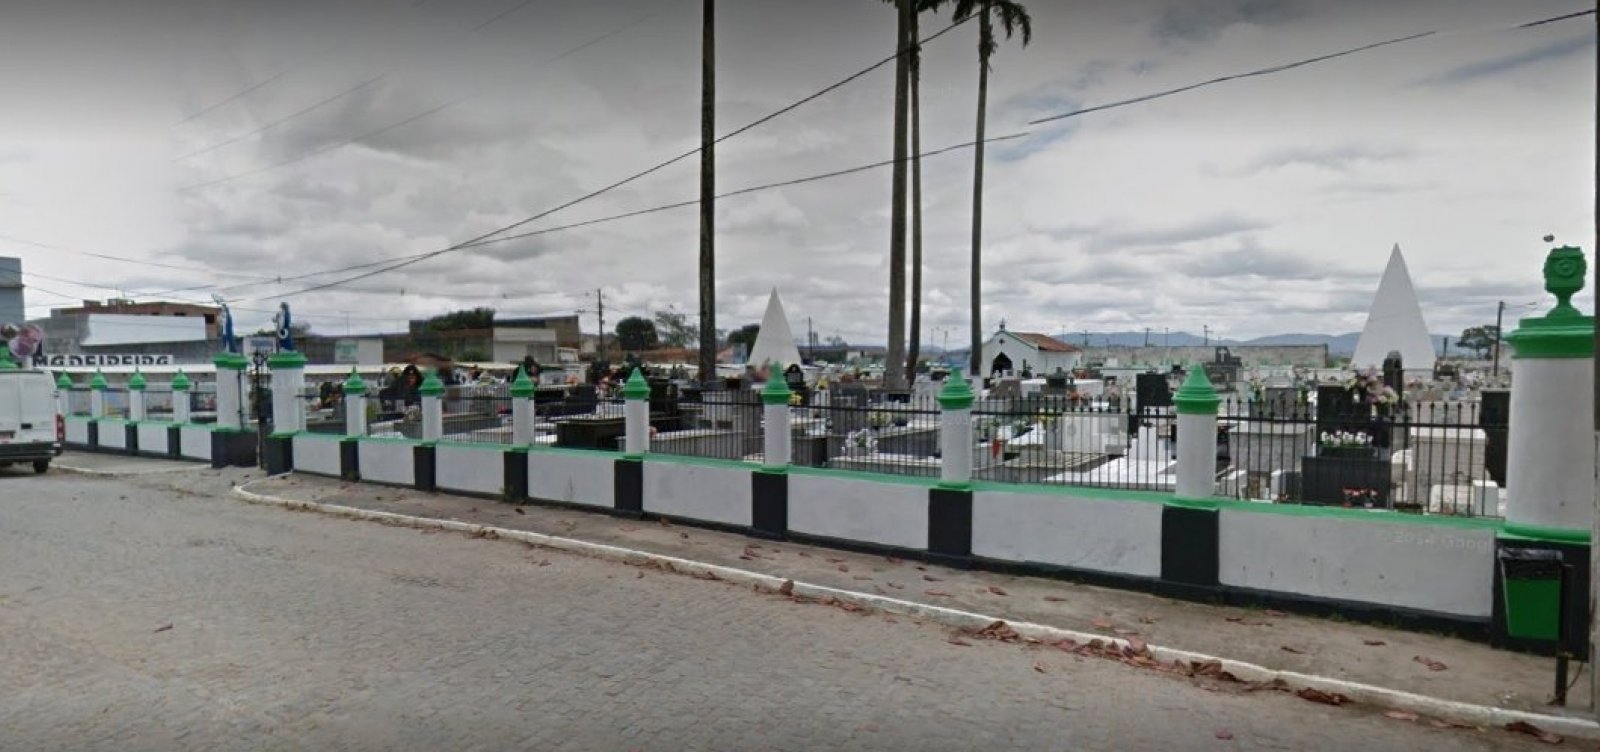 [Com avanço da pandemia, cidade na Bahia projeta ampliar cemitério]